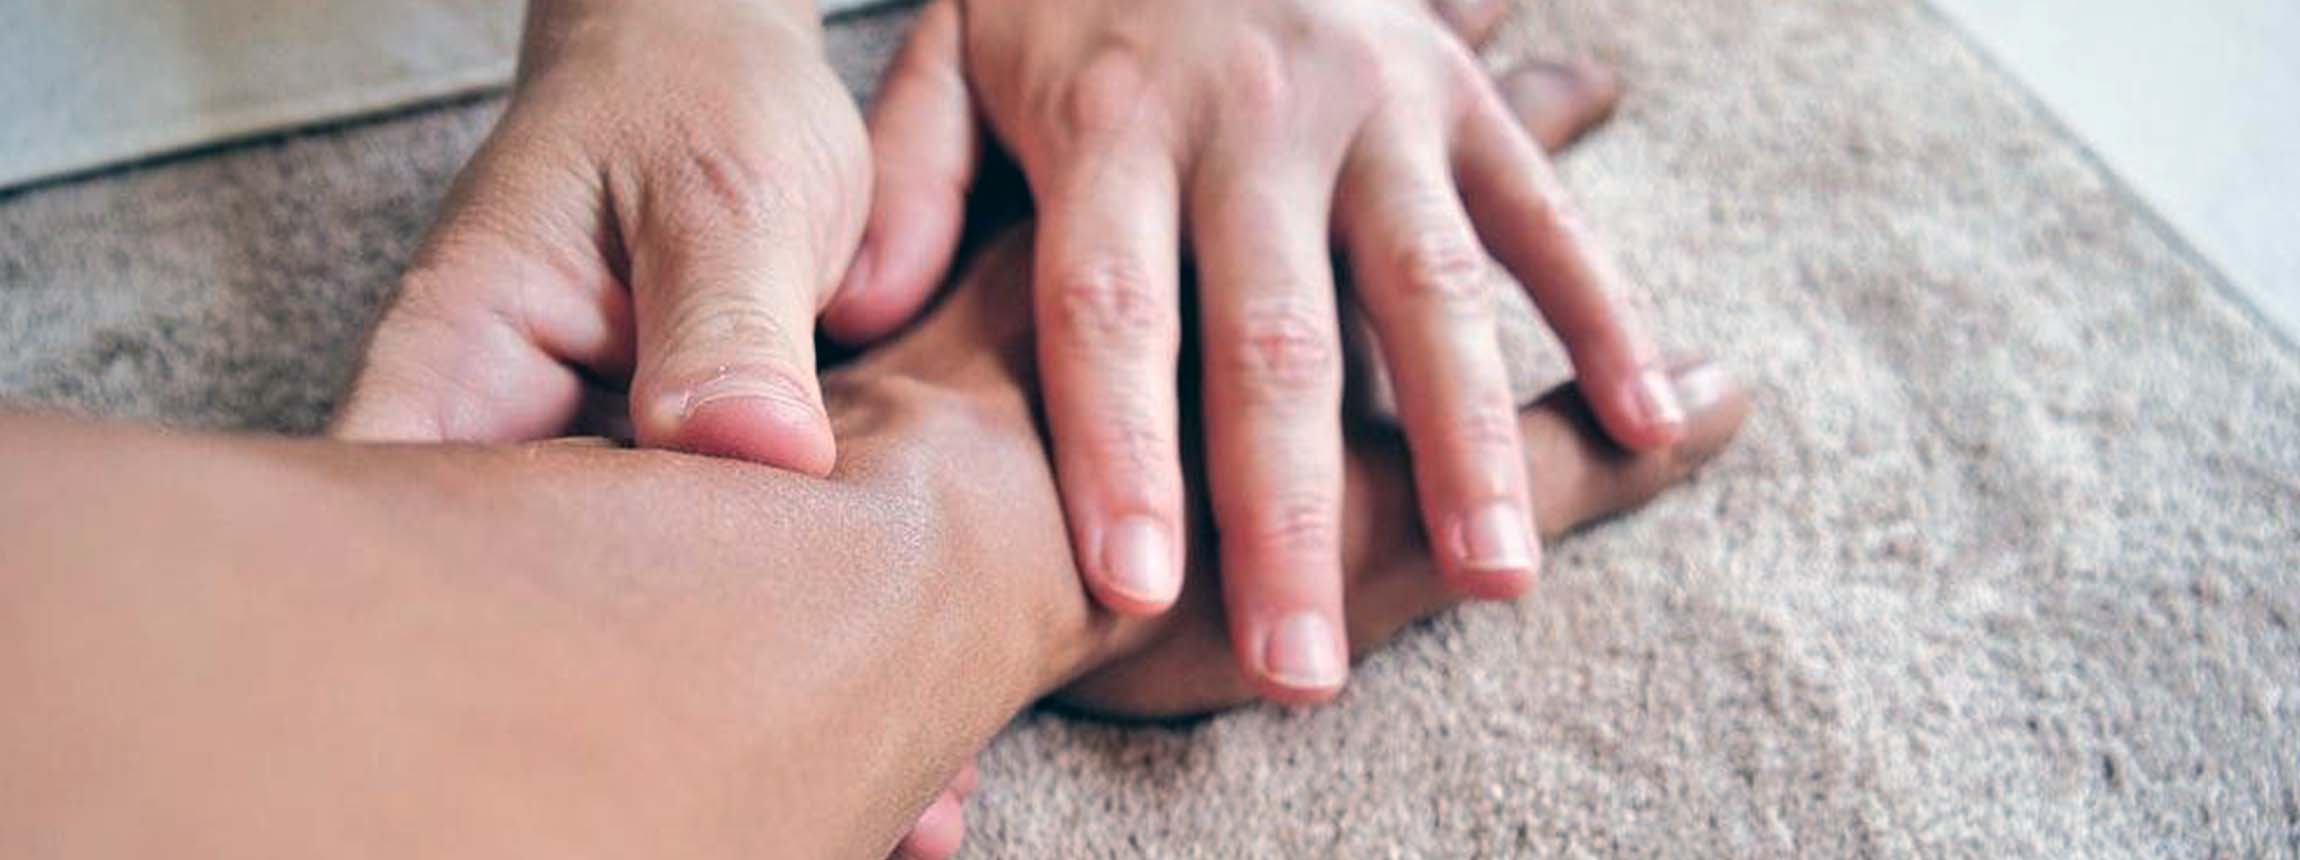 Hand being massaged